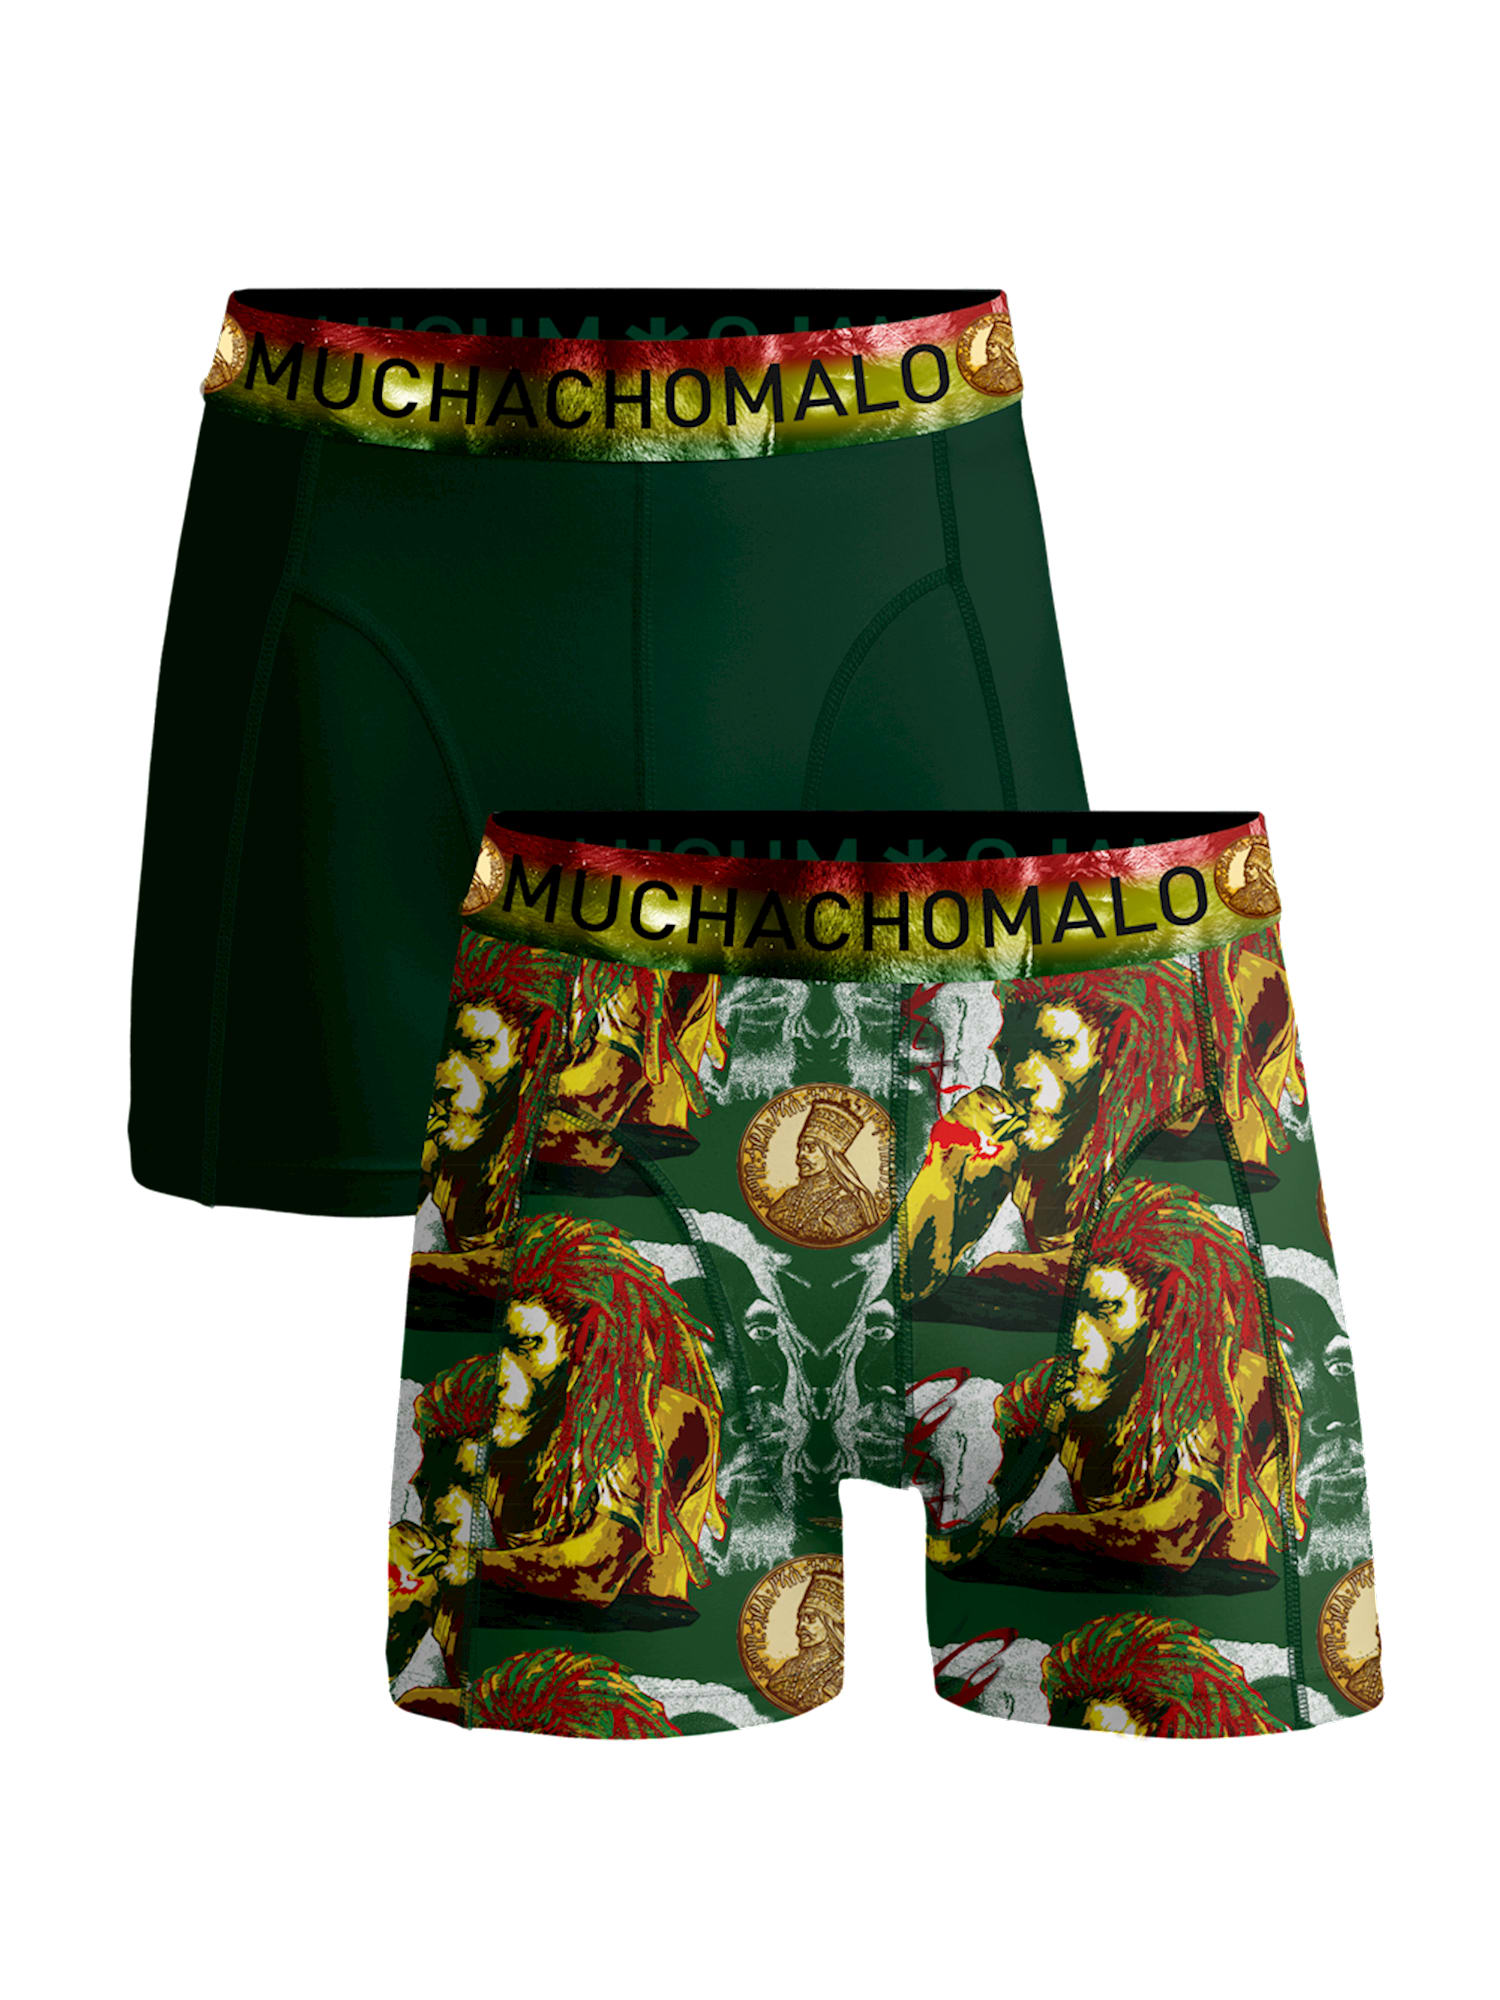 Боксеры Muchachomalo 2er-Set: Boxershorts, цвет Multicolor/Green боксеры muchachomalo 2er set boxershorts цвет multicolor green black green